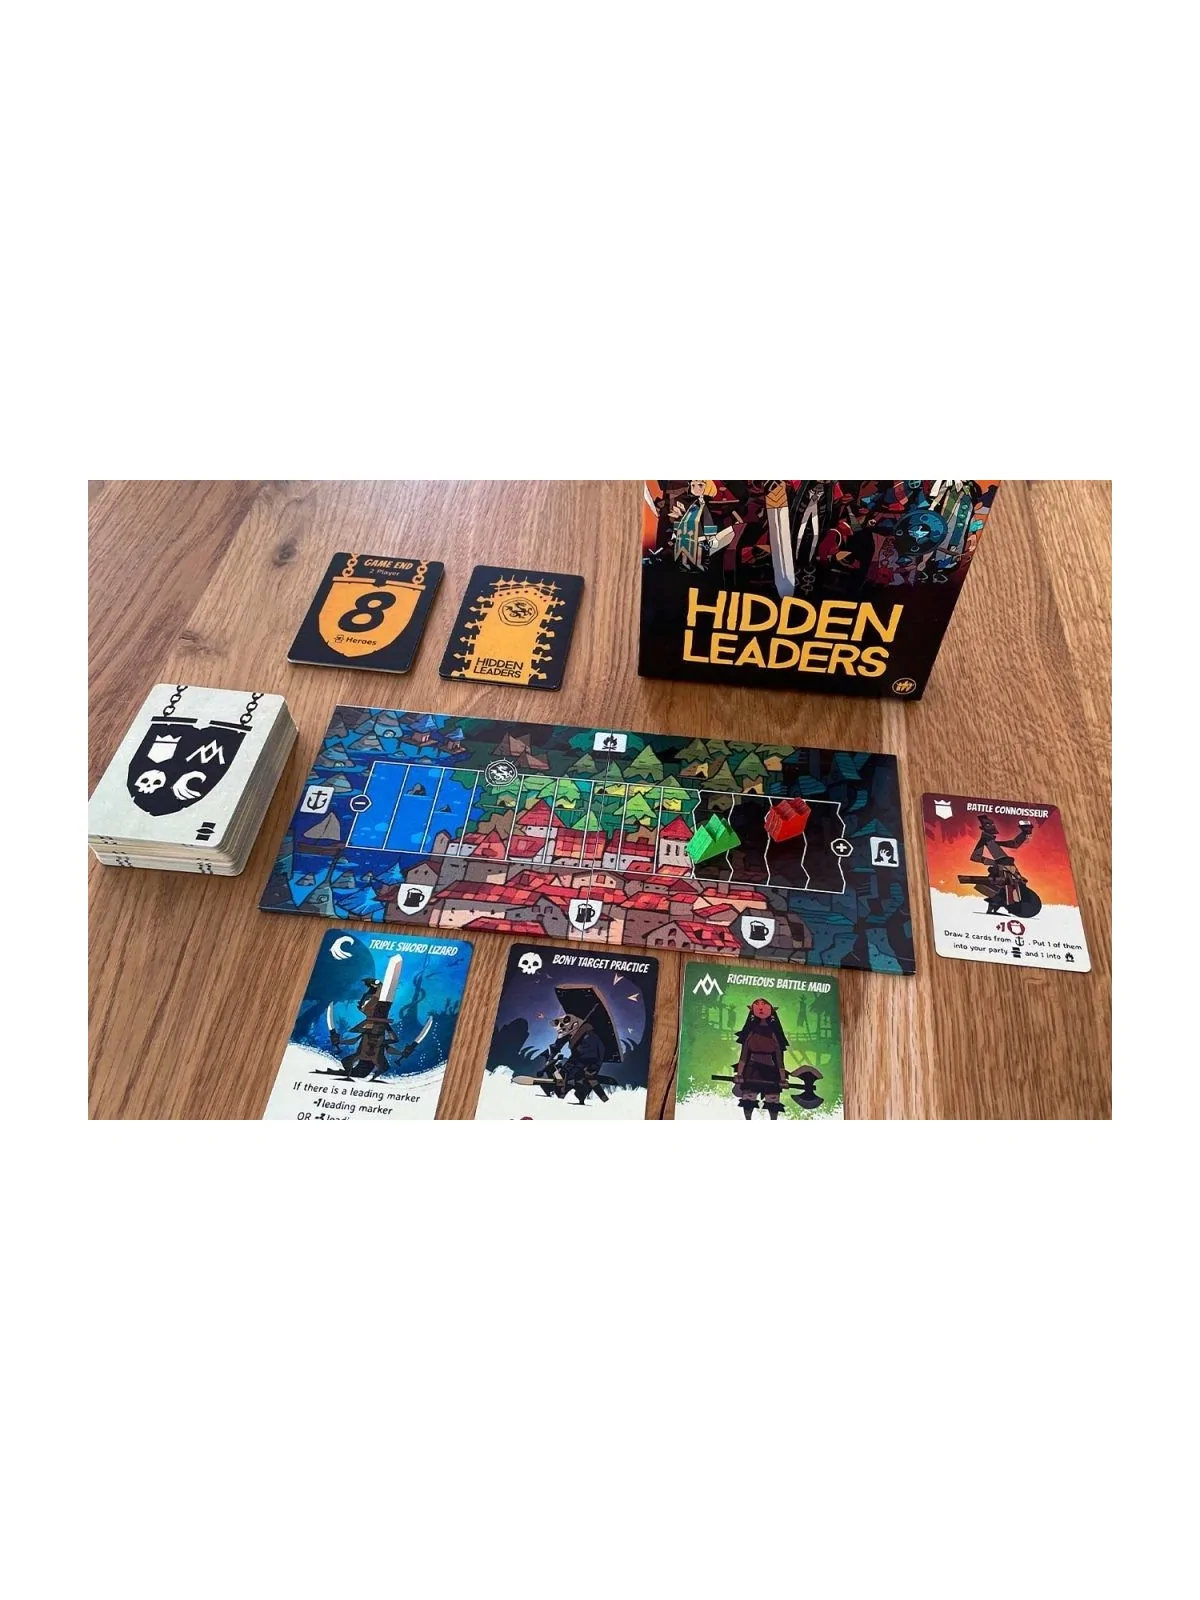 Comprar Hidden Leaders: Booster Pack barato al mejor precio 9,89 € de 